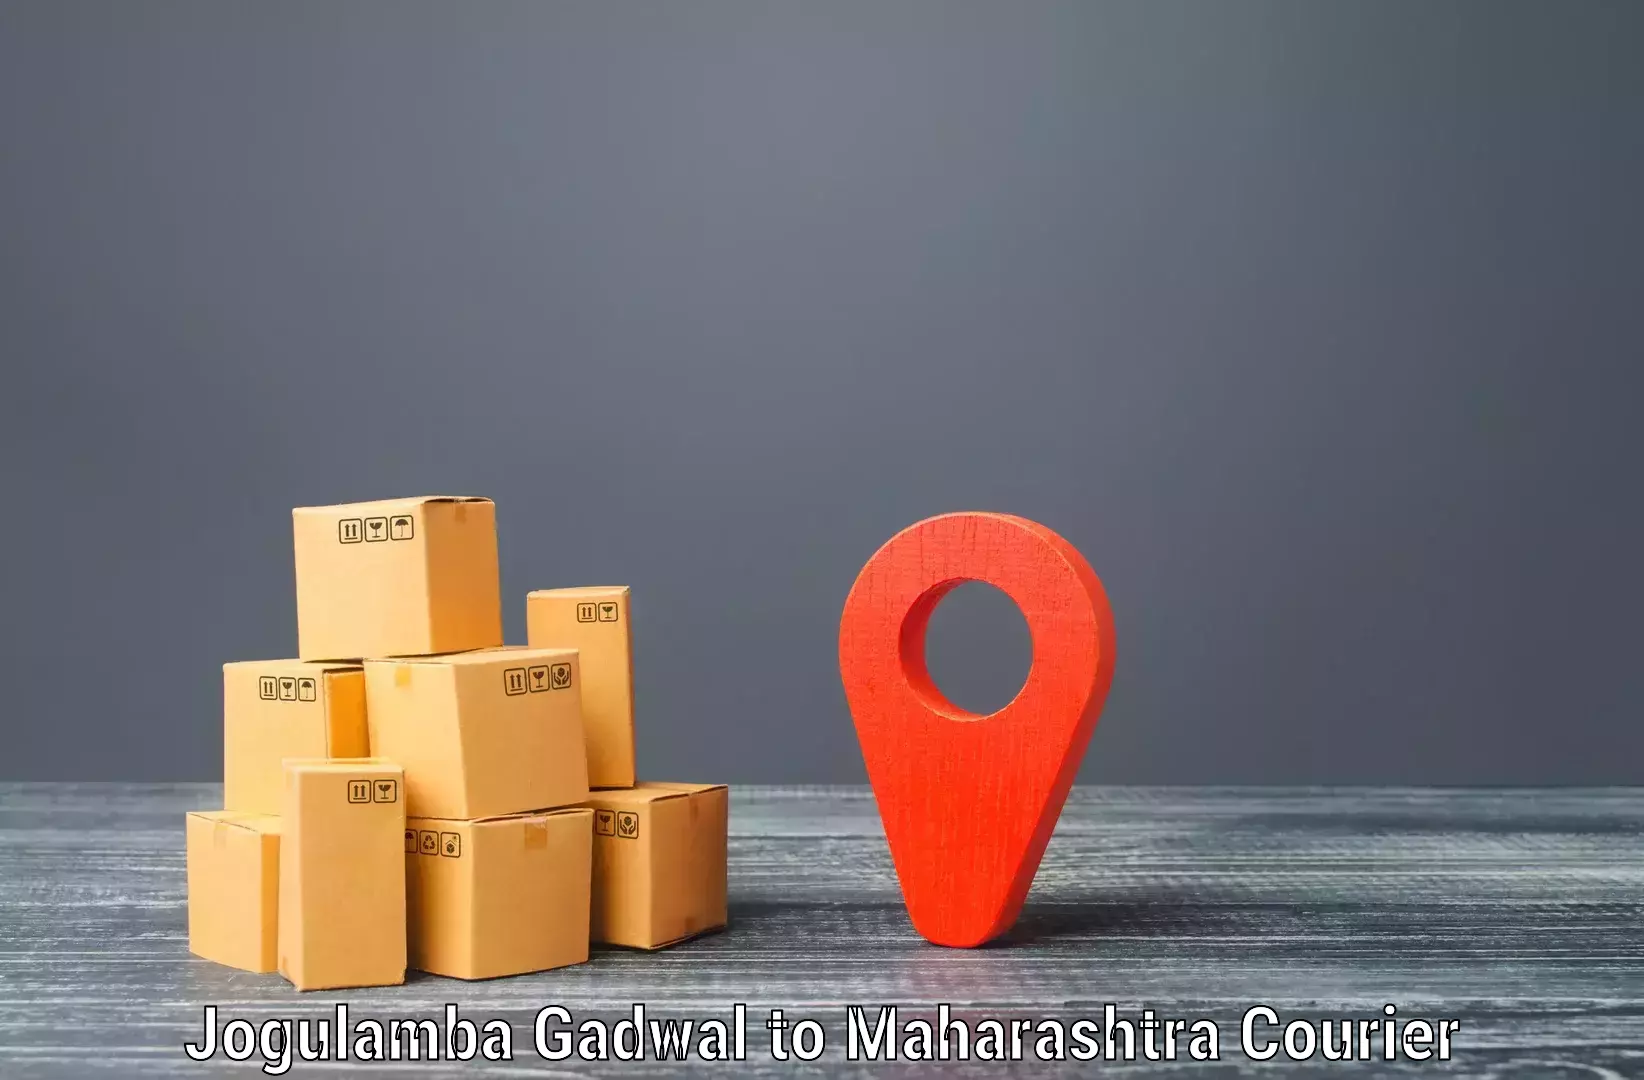 Courier service innovation Jogulamba Gadwal to Chakan